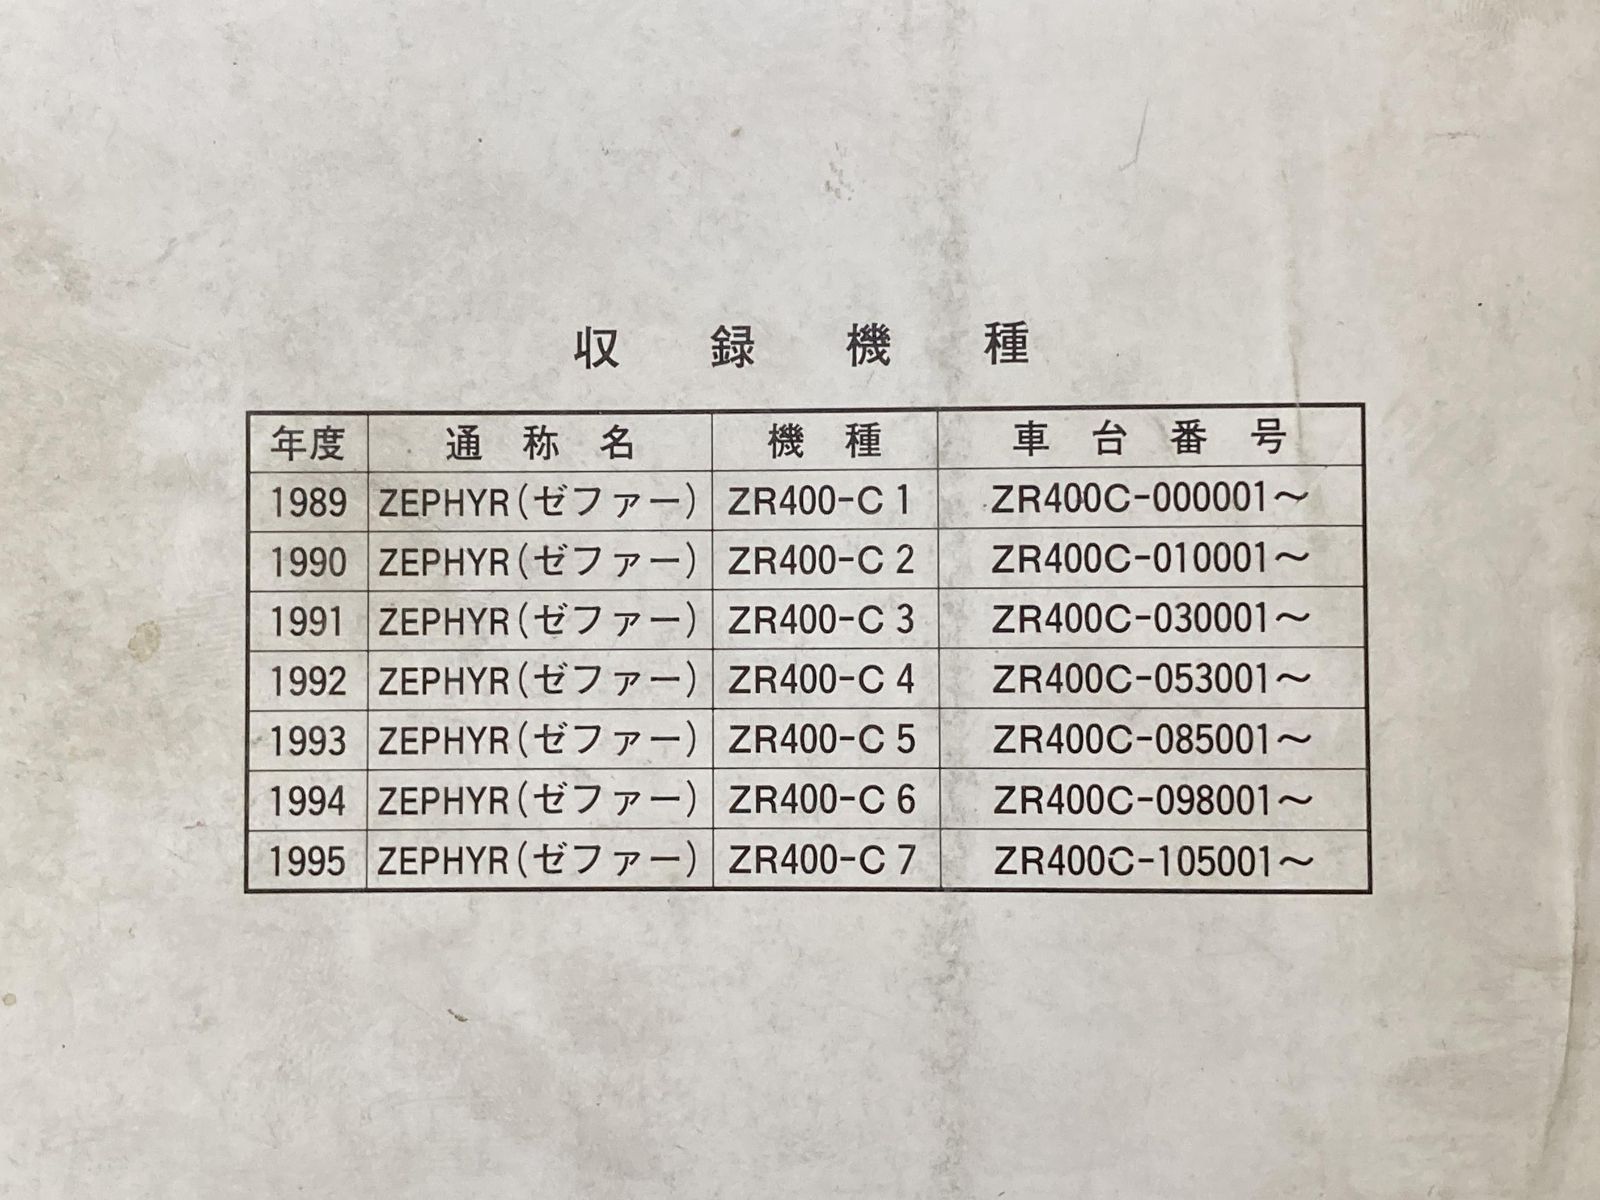 ゼファー400 ZEPHYR サービスマニュアル 7版 ZR400-C1 ZR400-C2 ZR400-C3 ZR400-C4 ZR400-C5 ZR400-C6 ZR400-C7 配線図 カワサキ 正規  バイク 整備書 ZR400-C1 C2 C3 C4 C5 C6:22289545